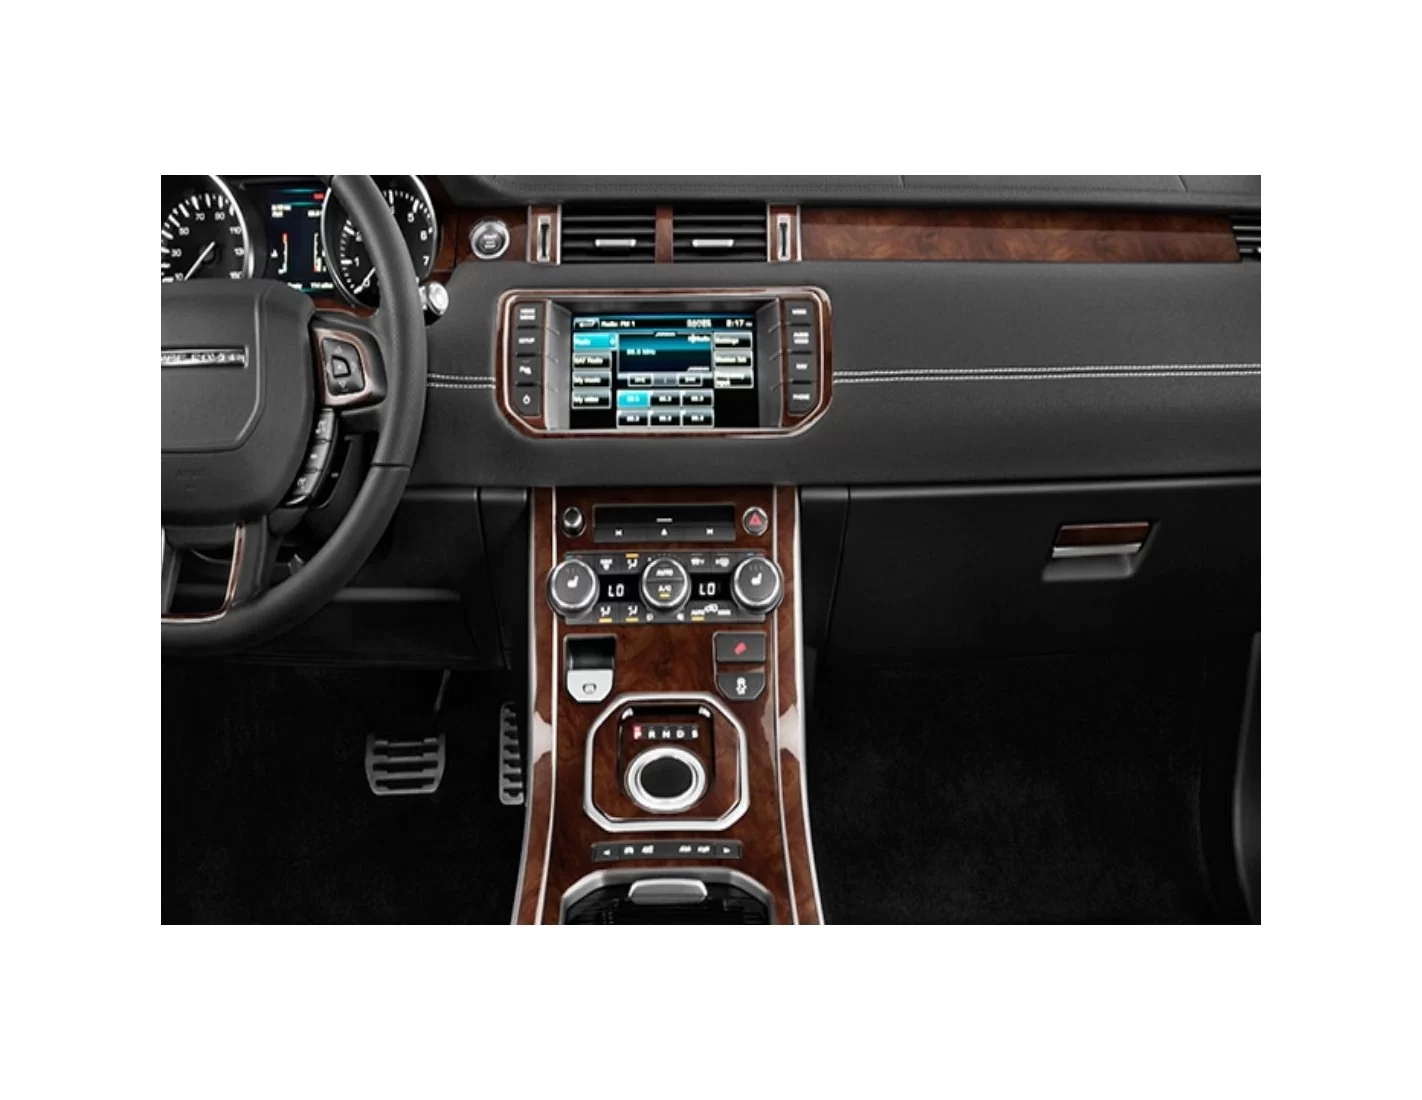 Land Rover Range Rover Evoque 2012-2016 Mittelkonsole Armaturendekor Cockpit Dekor 30-Teilige - 1- Cockpit Dekor Innenraum